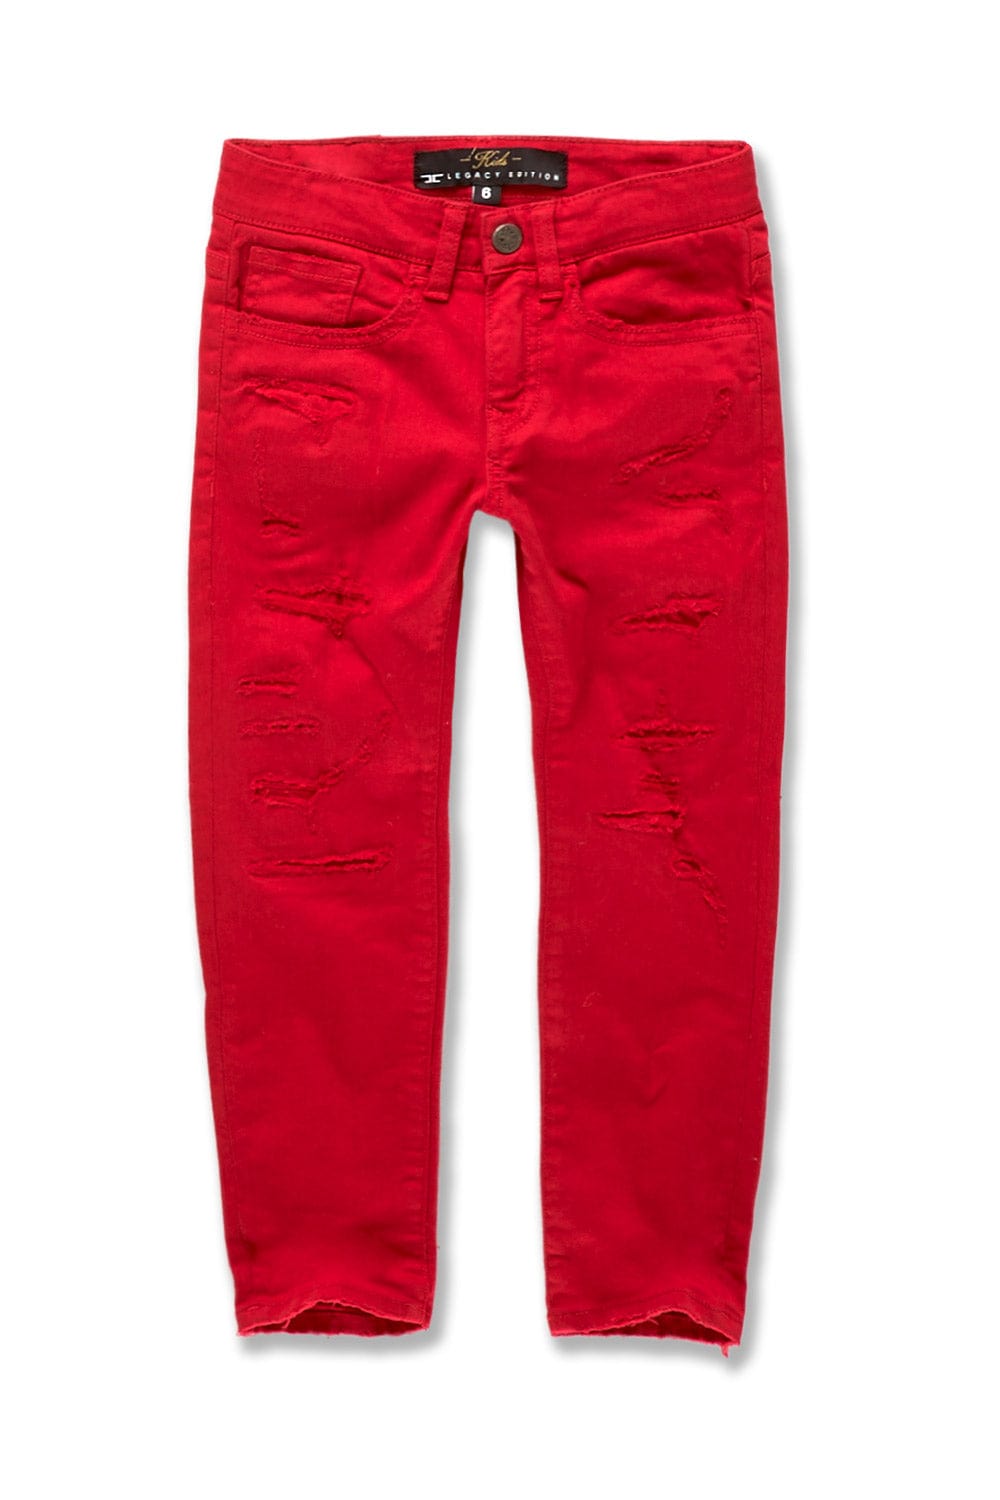 JC Kids Kids Tribeca Twill Pants (Red) Red / 2